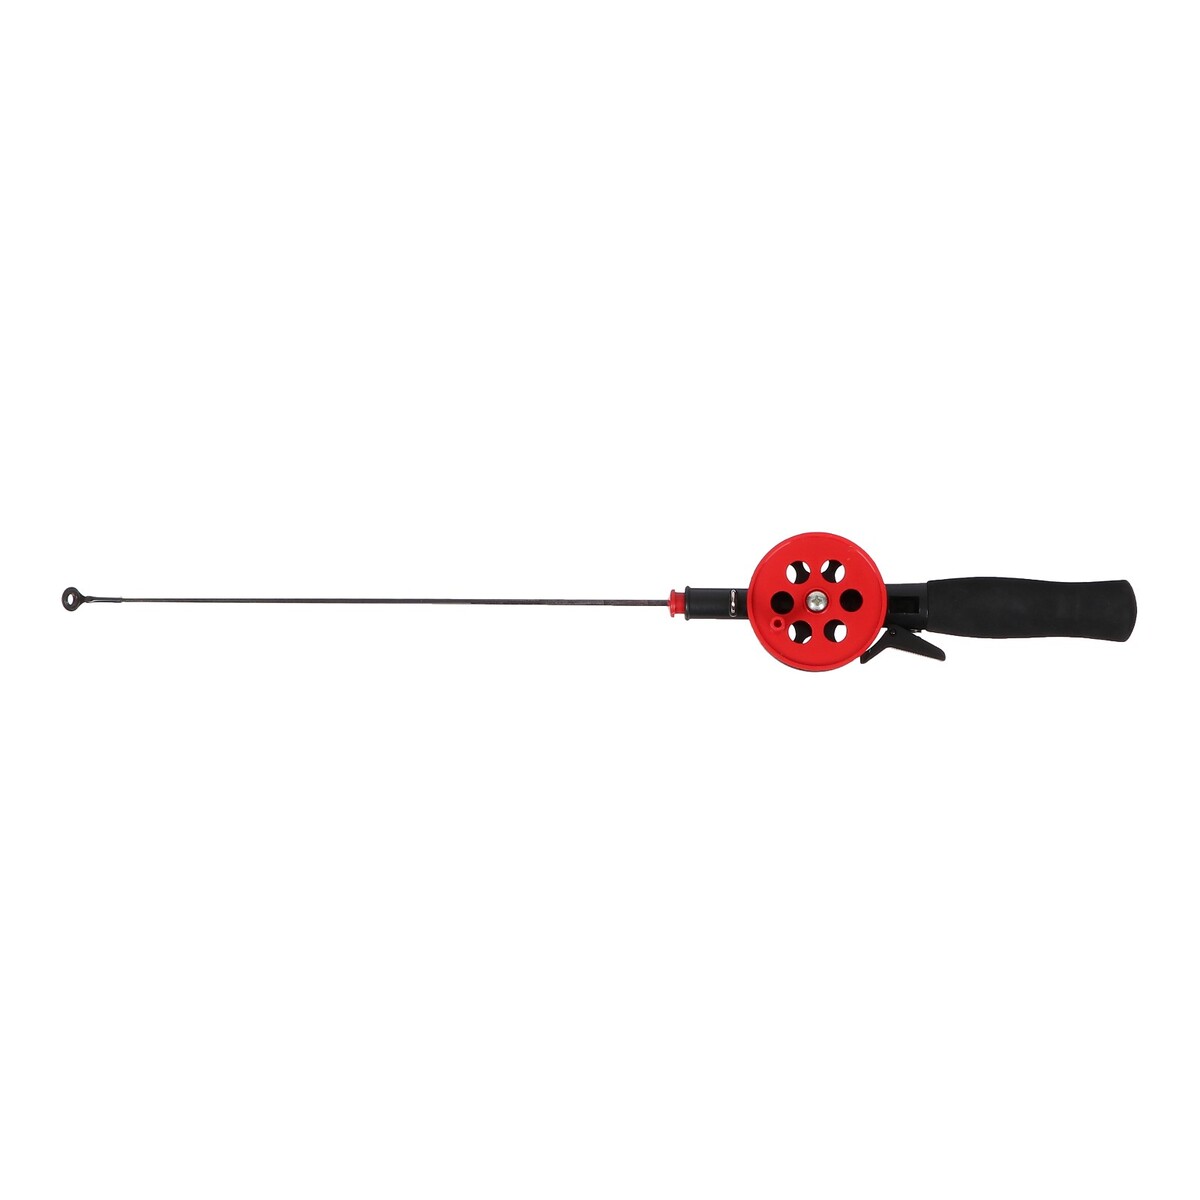 Удочка зимняя, ручка неопрен, длина 42 см, цвет красный, hbf-34(1) удочка зимняя ручка неопрен диаметр катушки 9 5 см hfb 1m